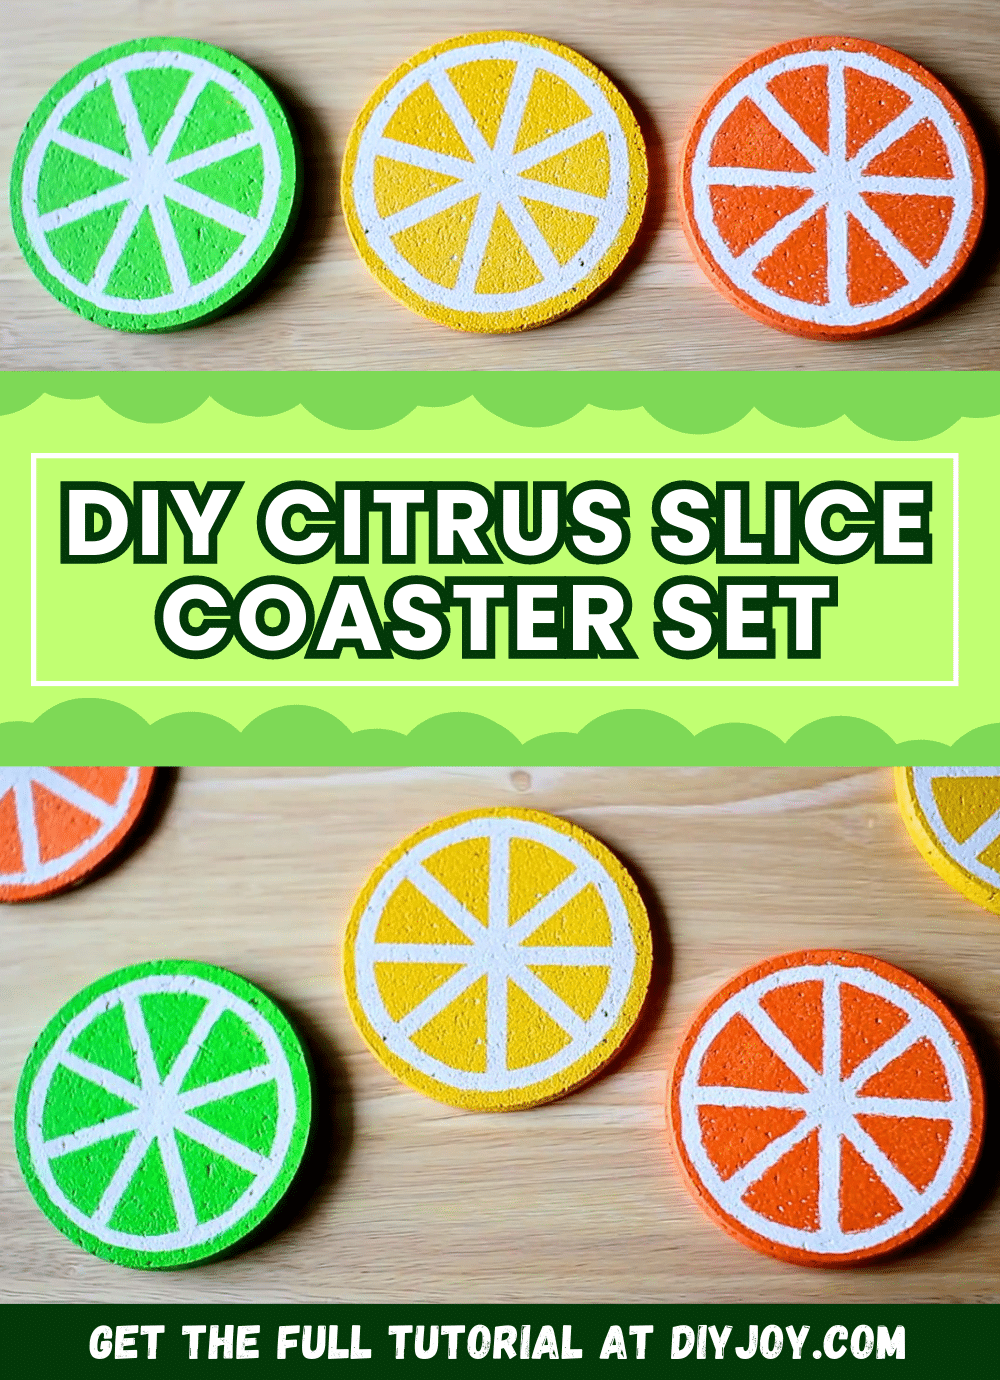 Easy DIY Citrus Slice Coaster Set Tutorial